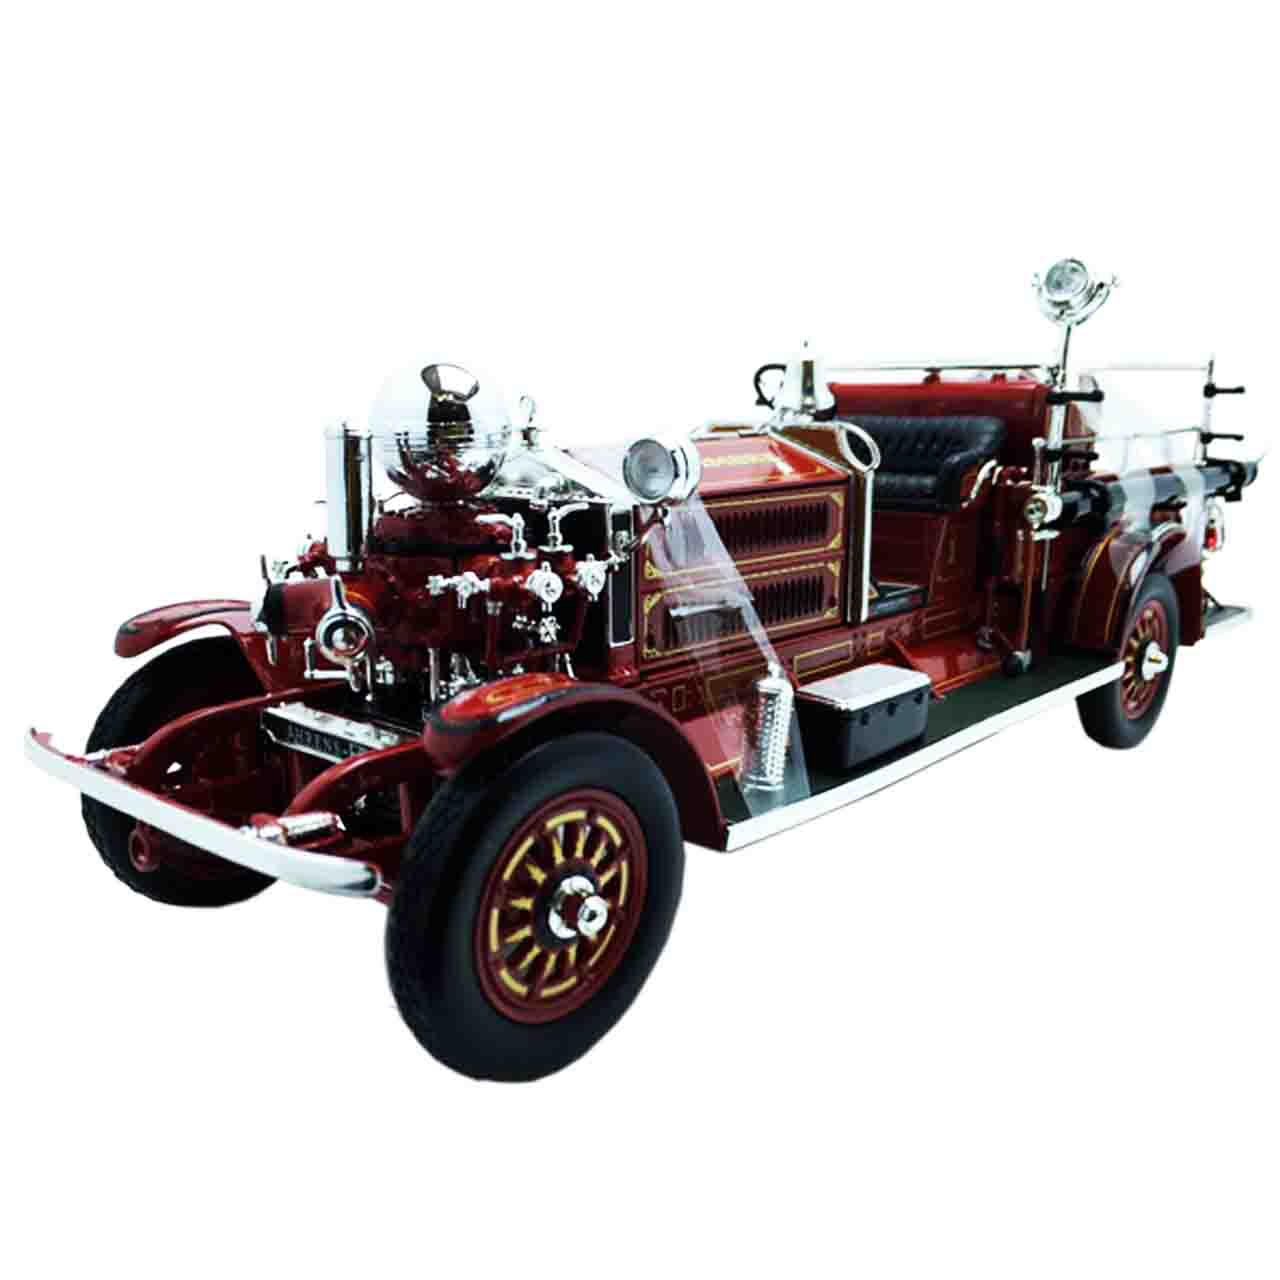 ماشین اتش نشانی لوکی دایکست مدلAHRENS-FOX 1925 LUKY DIE CAST